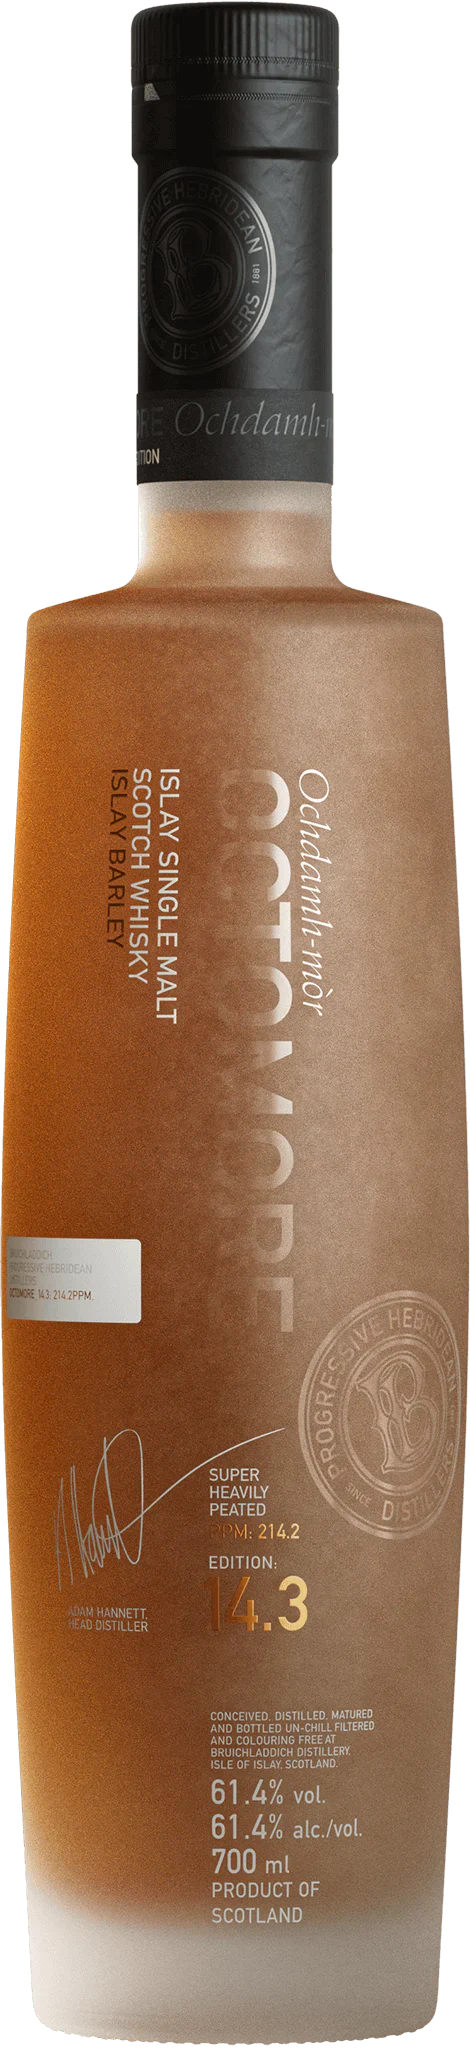 Bruichladdich Octomore Edition 14.3 Islay Single Malt Scotch Whisky 750ml